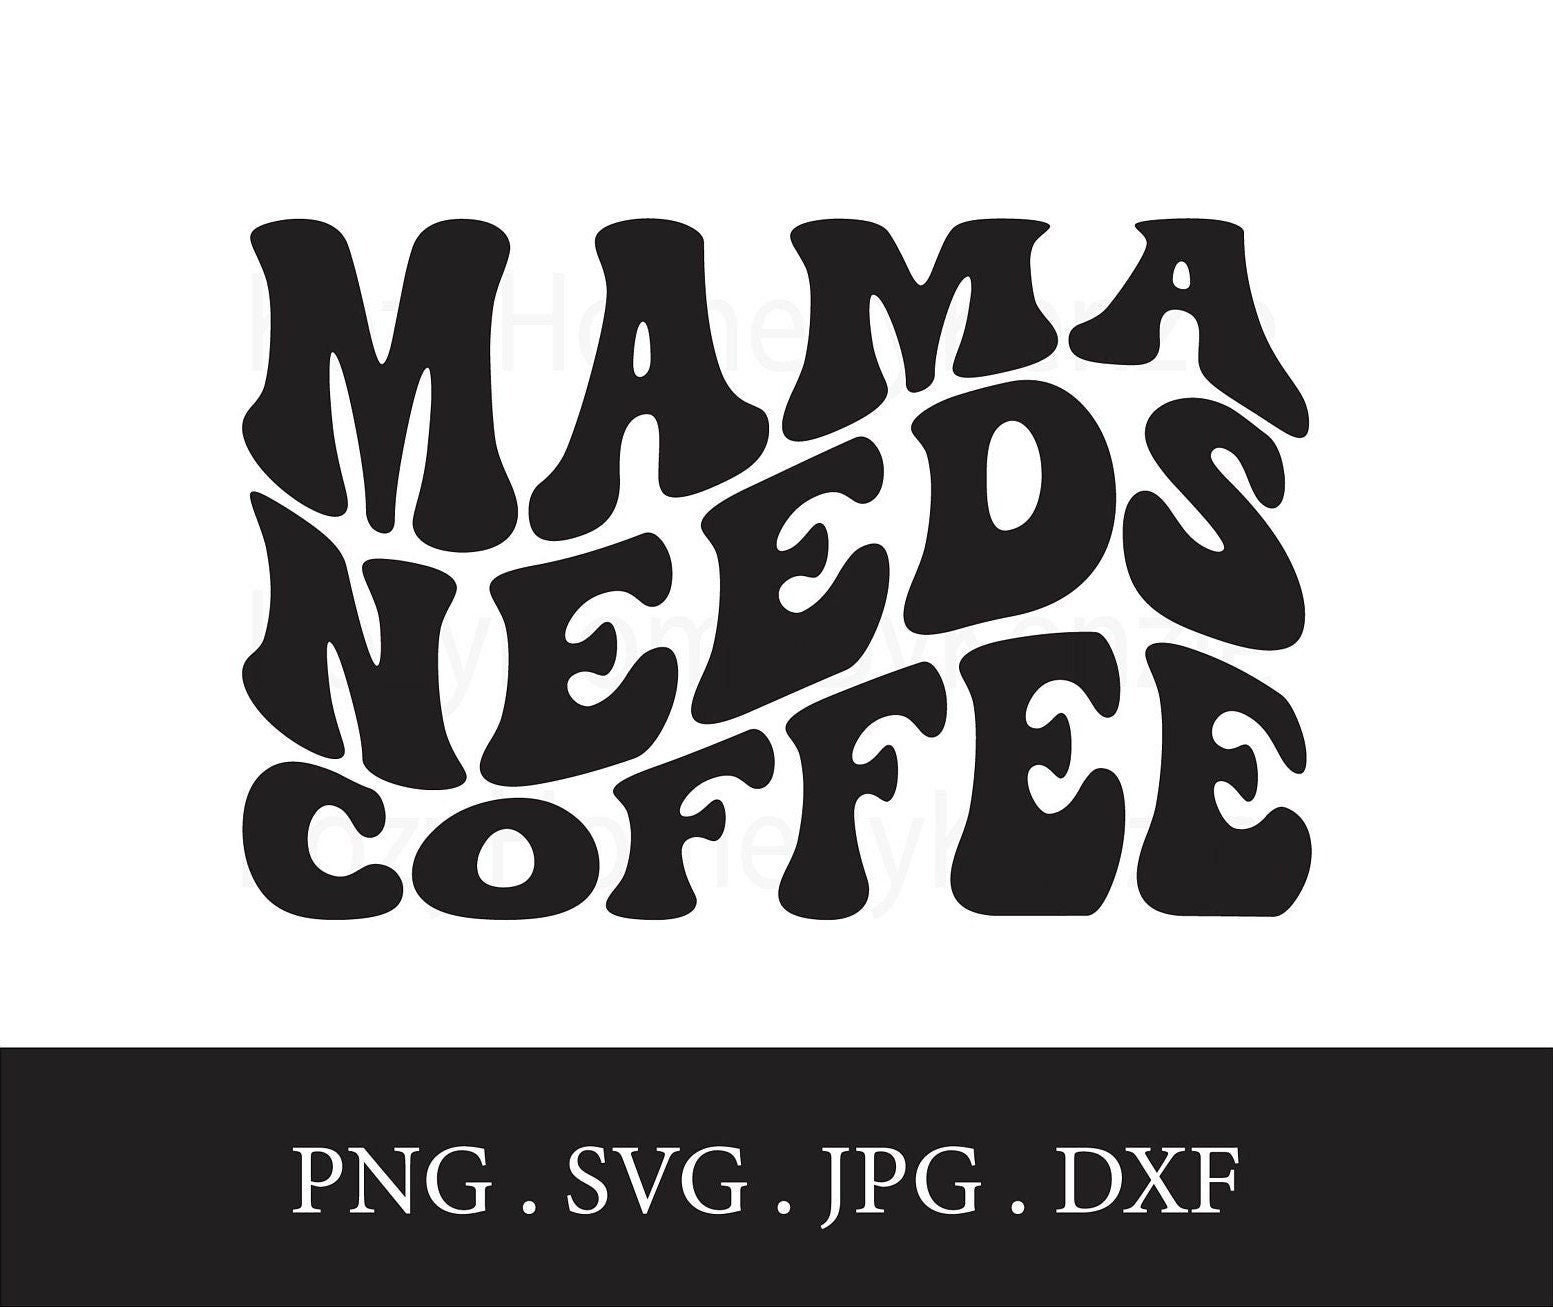 Mama Needs Coffee SVG